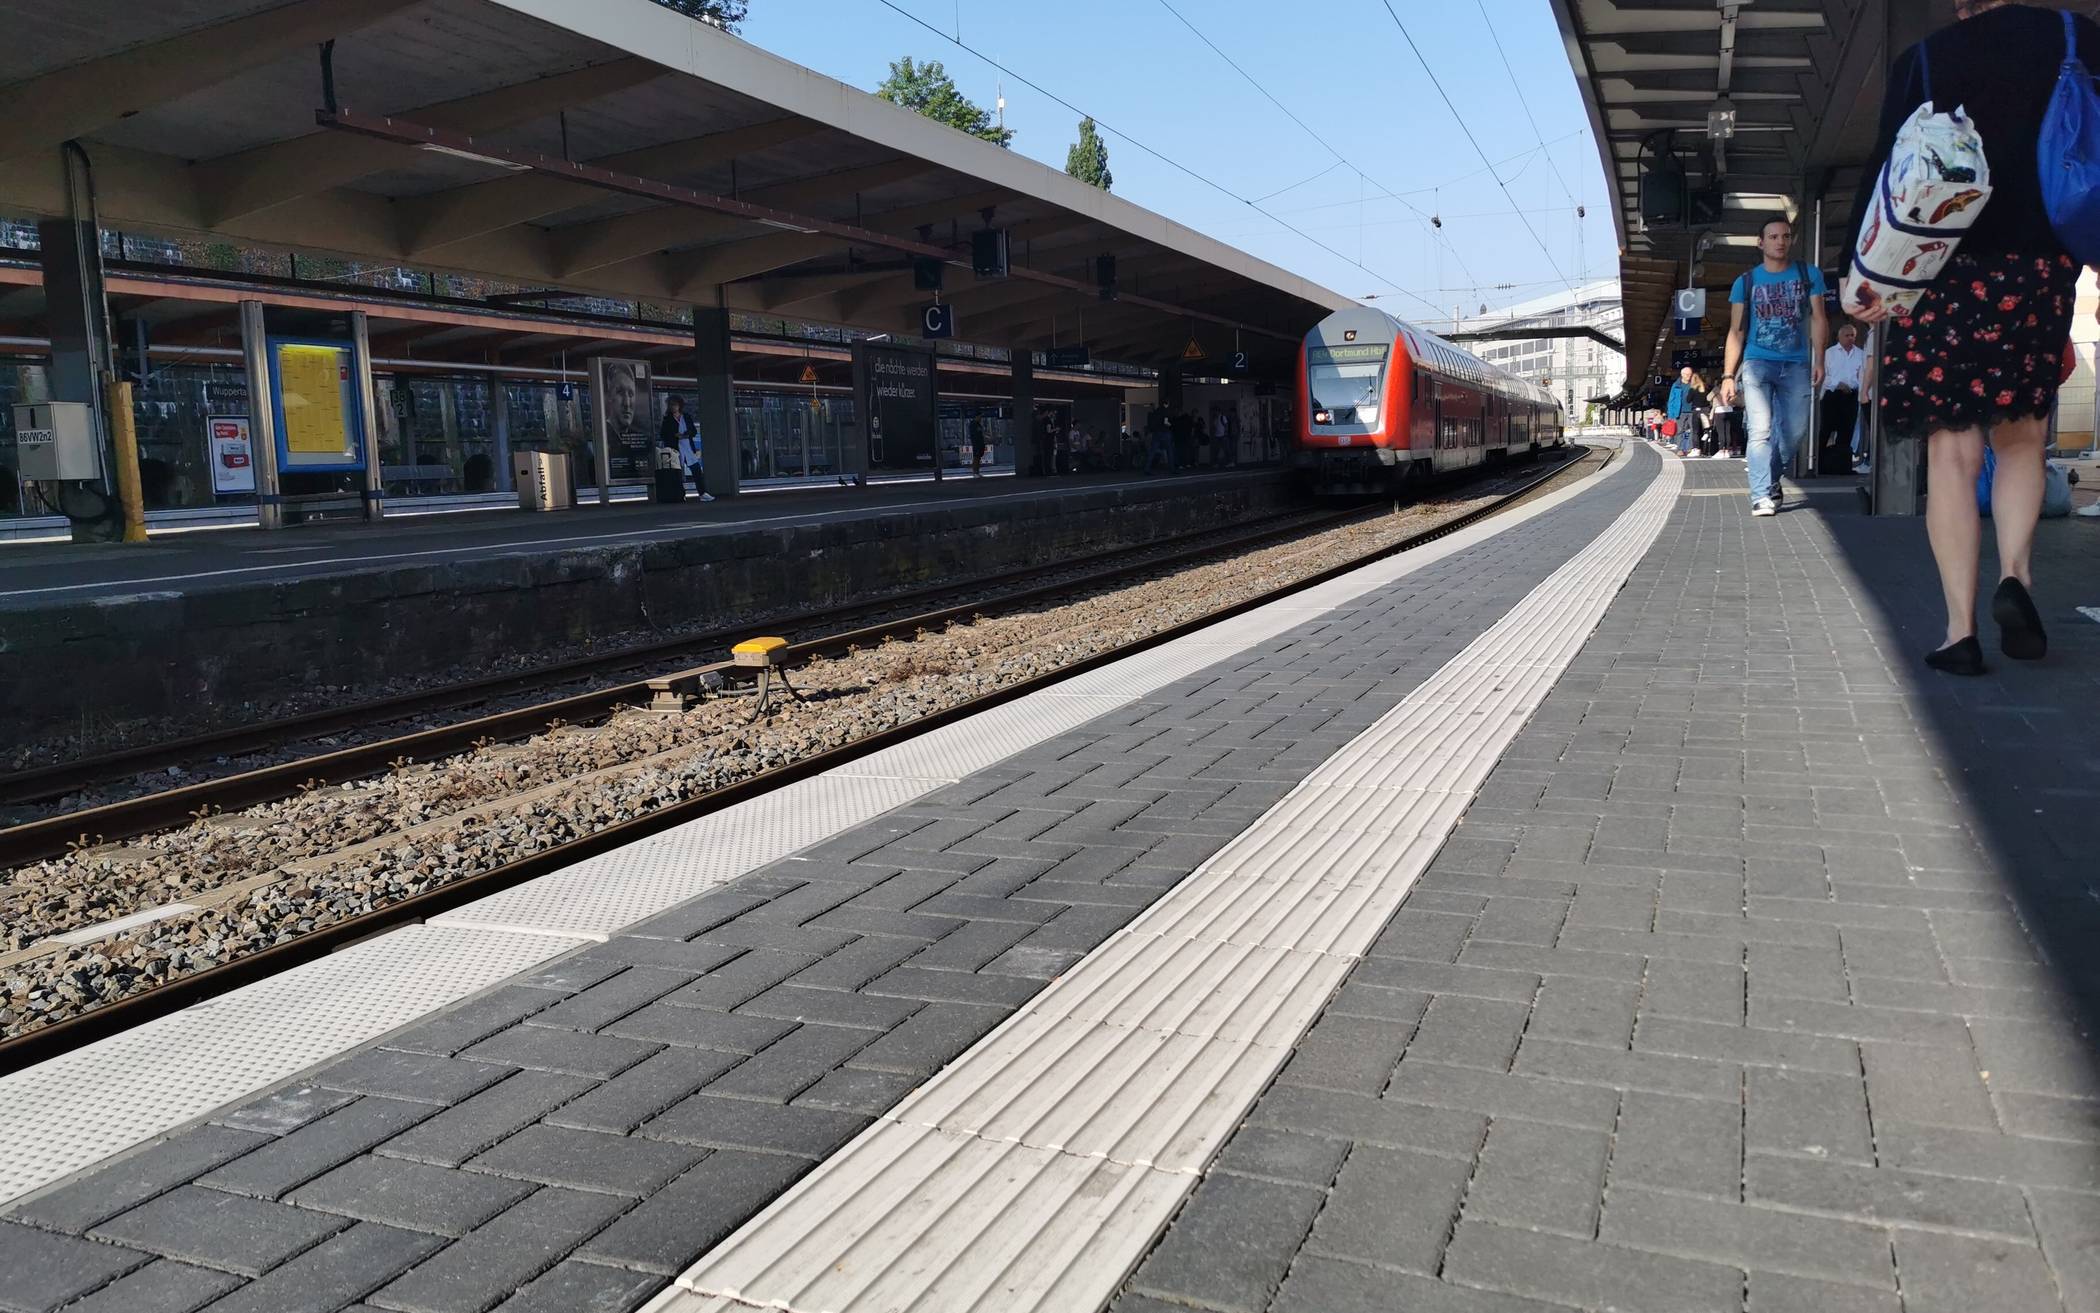  Leere Gleise erwarten Wuppertal am Wochenende vom 31. Januar bis zum 3. Februar 2020.  